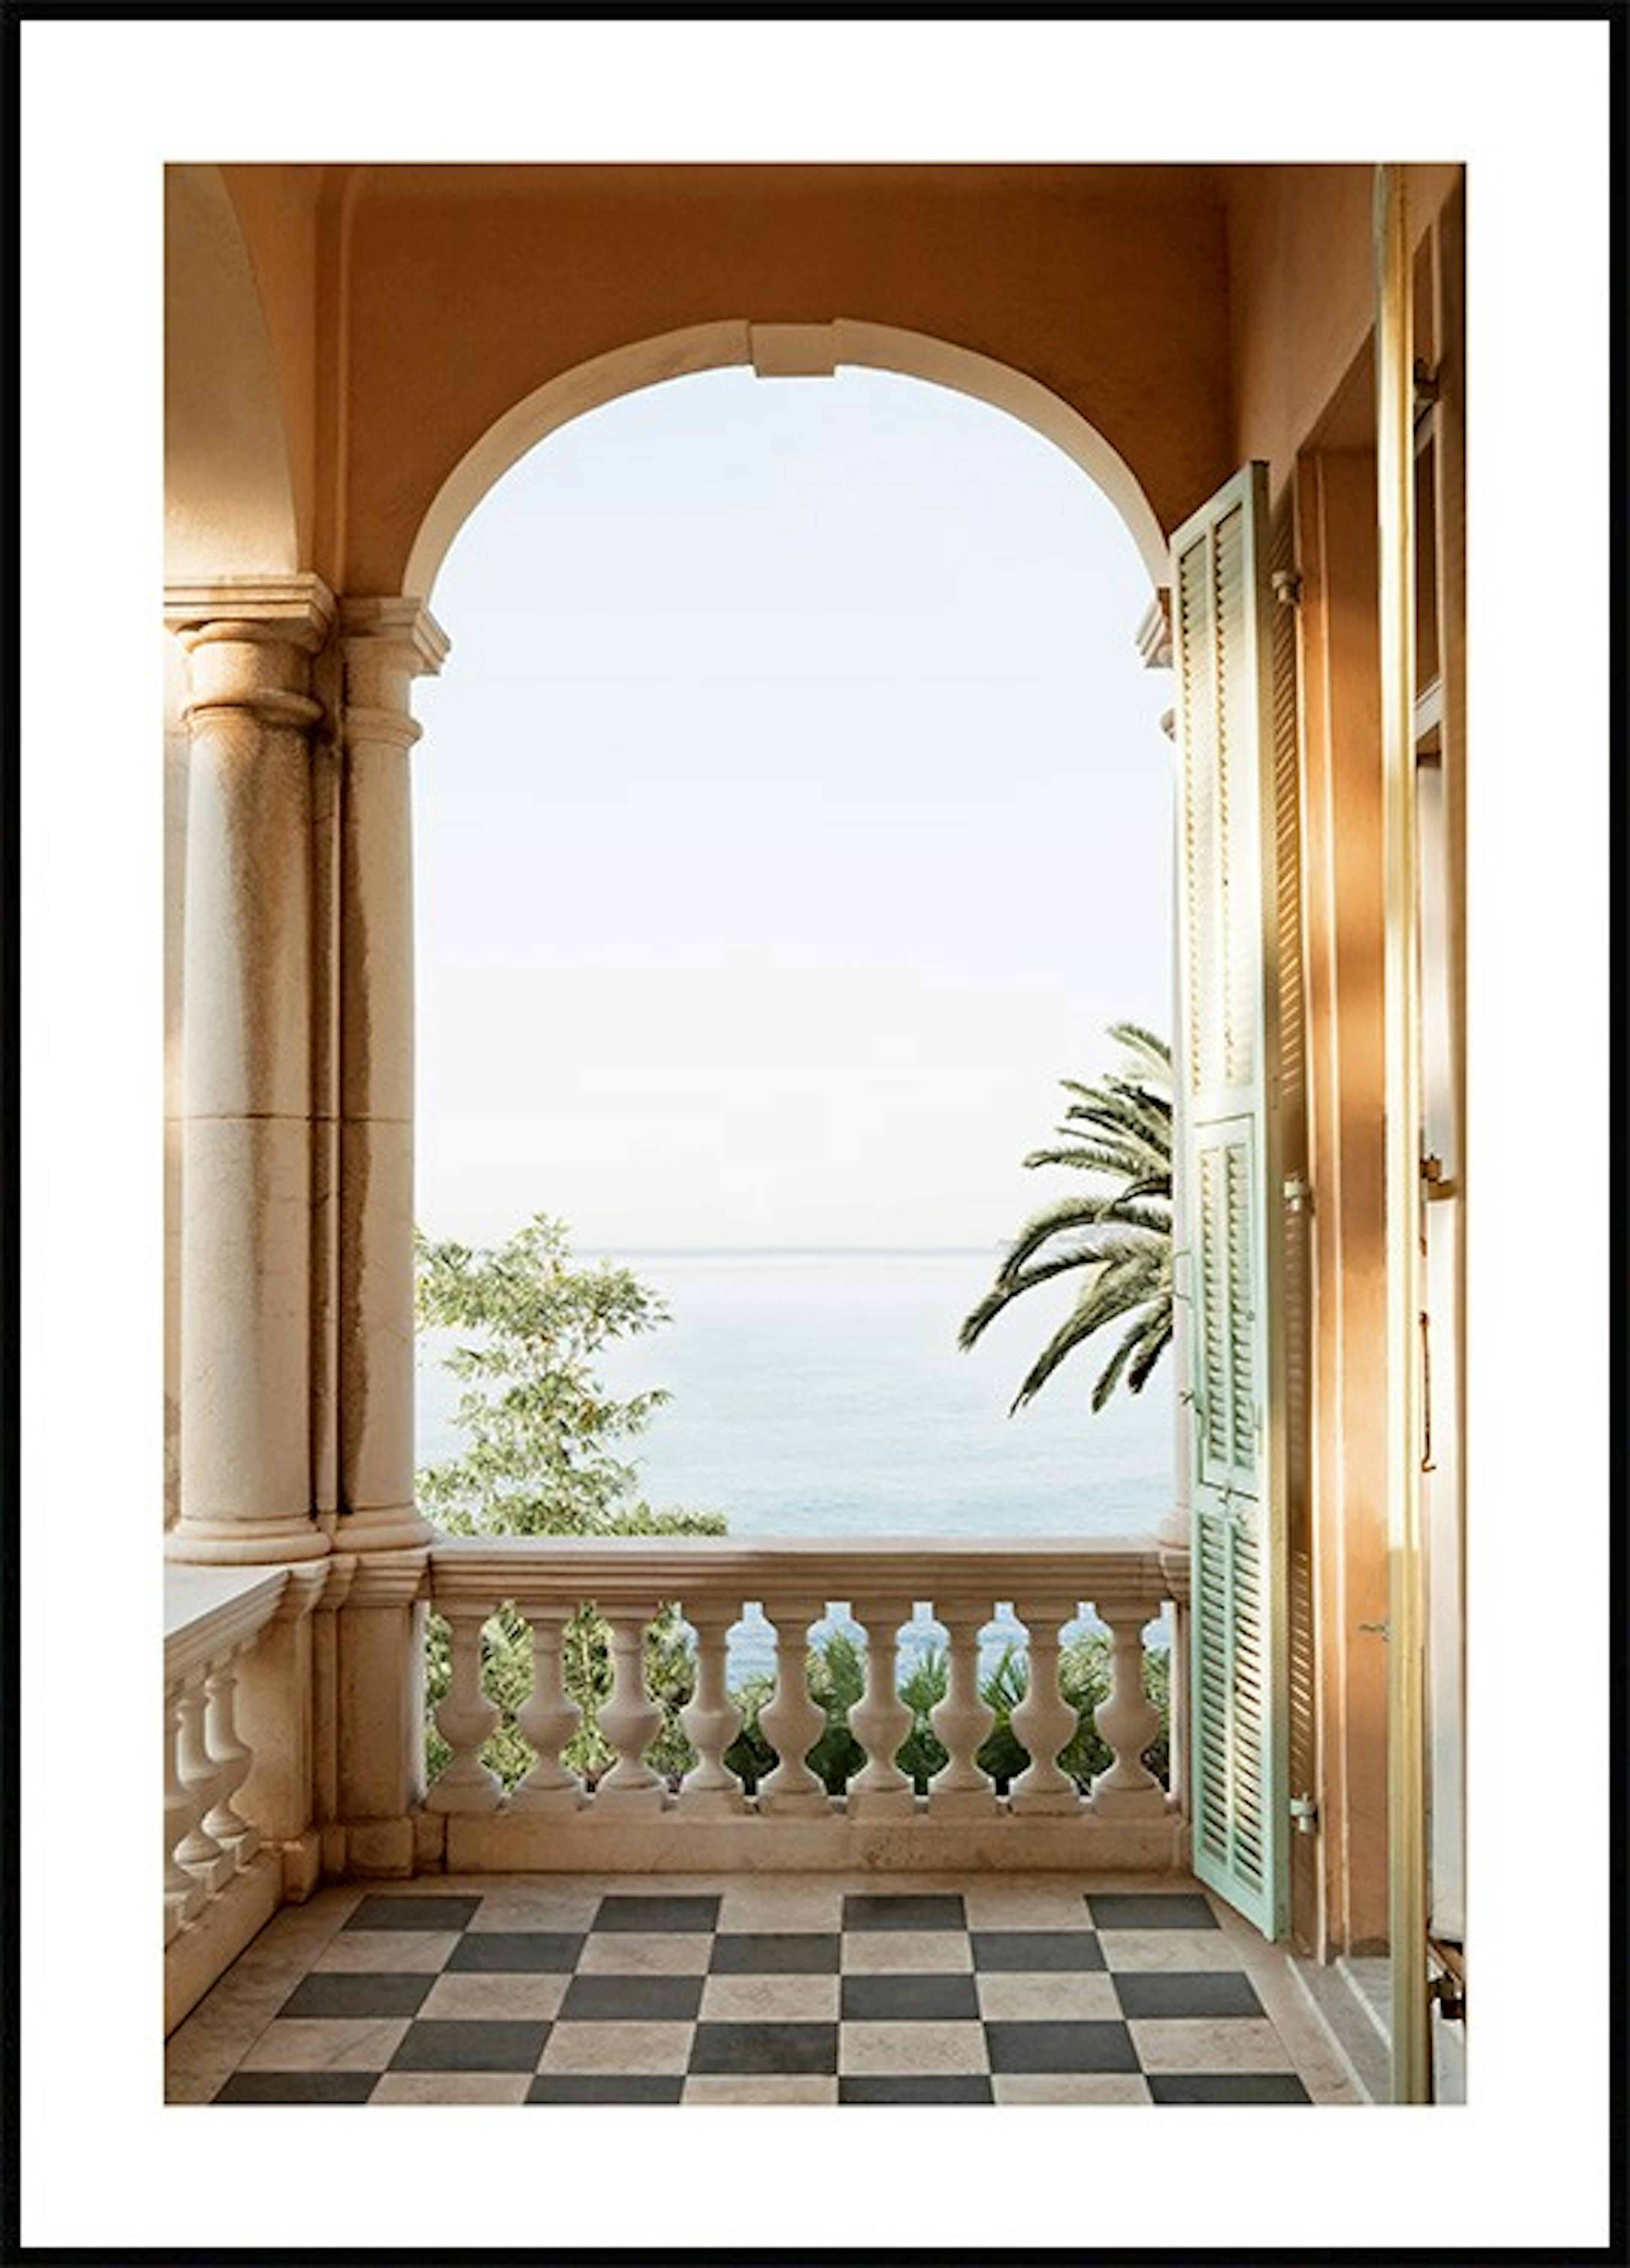 لوحة لصورة شرفة مطلة على البحر الأبيض المتوسط 0